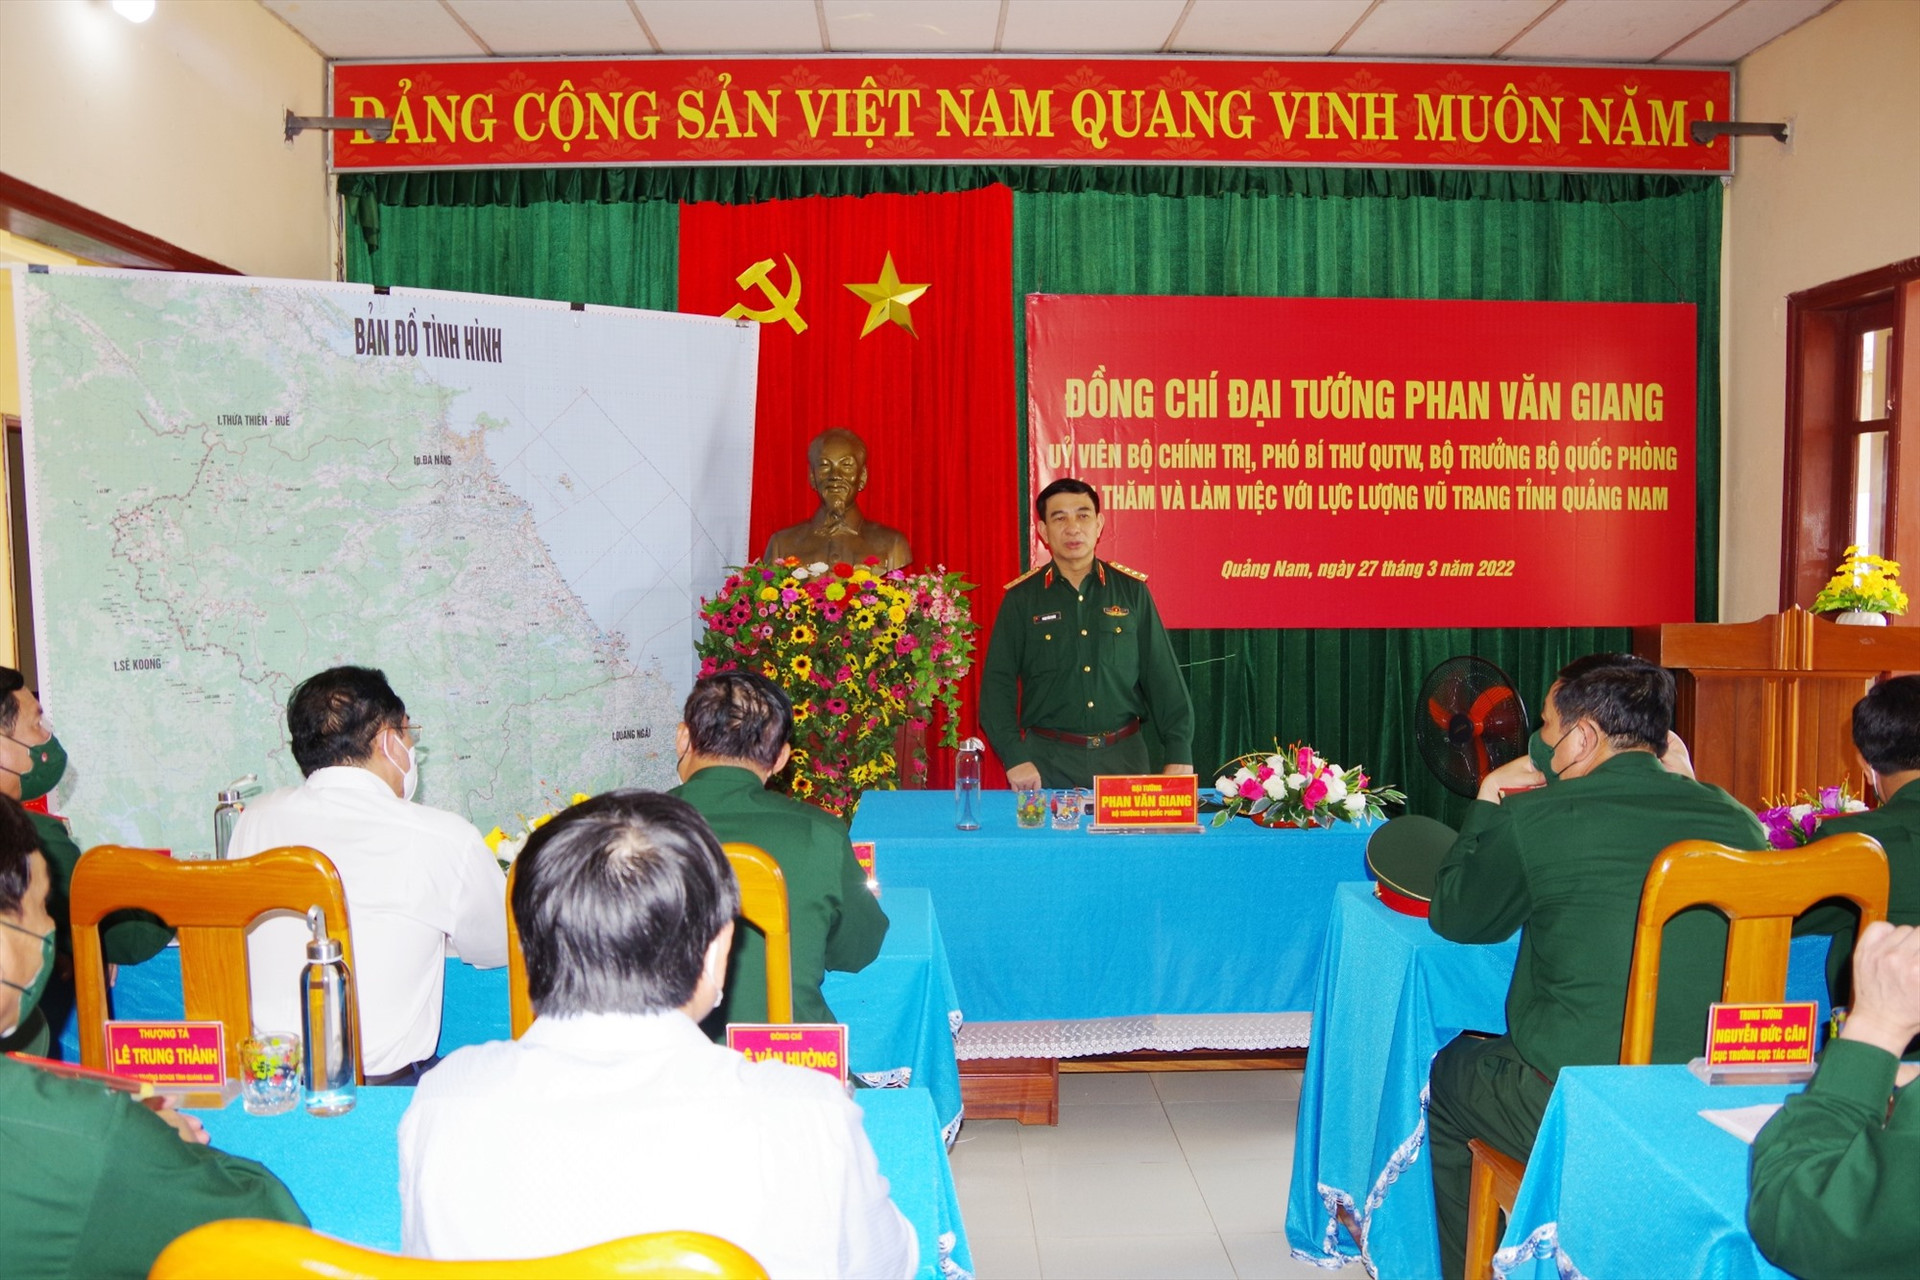 Đại tướng Phan Văn Giang phát biểu tại buổi làm việc với lực lượng vũ trang tỉnh Quảng Nam.